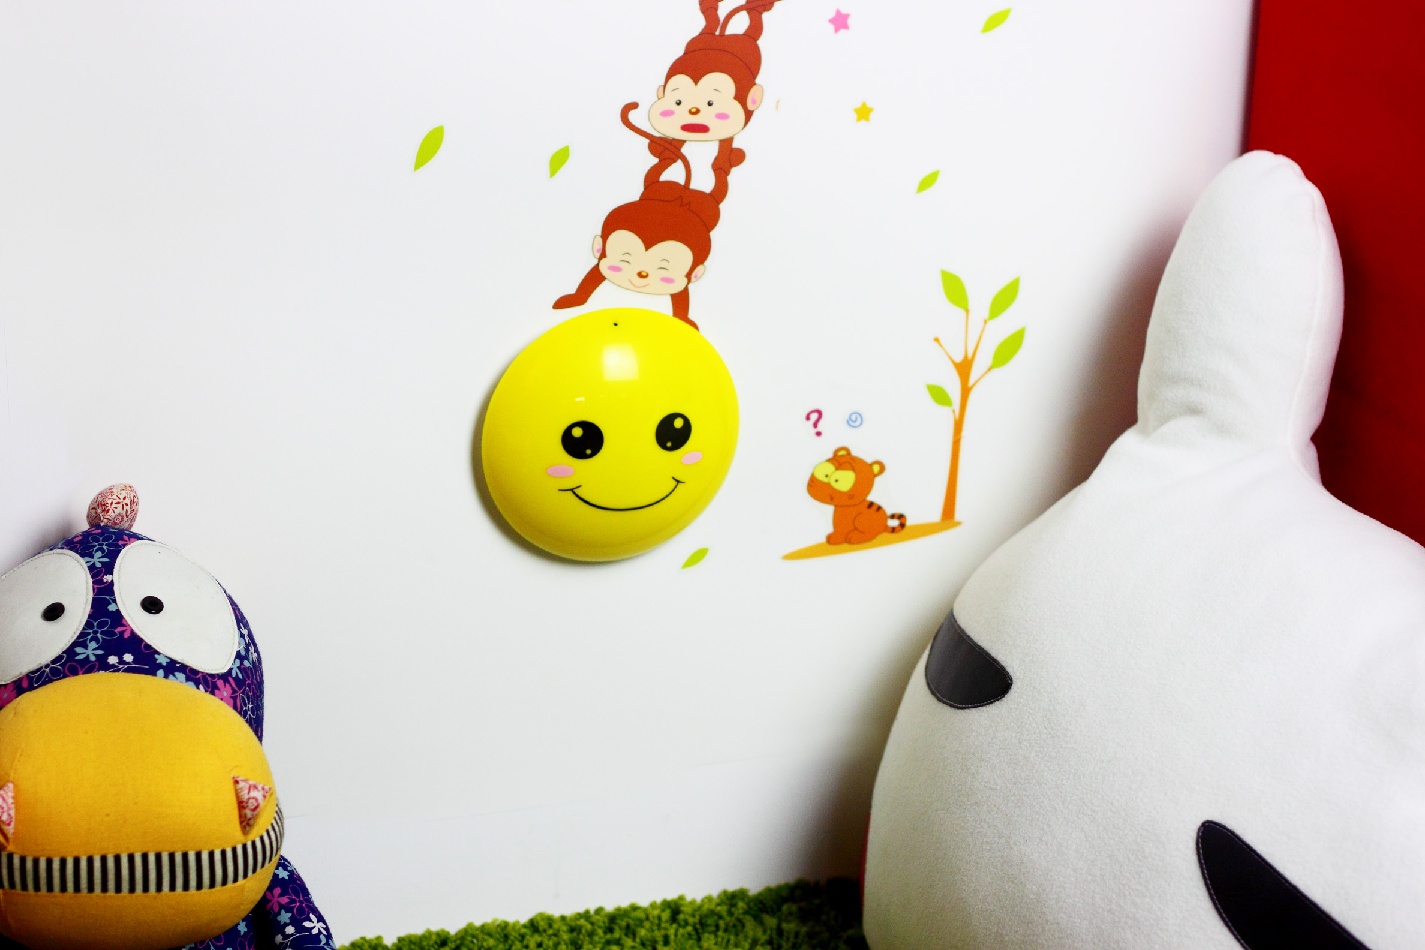 光控墙纸LED小夜灯DIY卡通智能壁灯猴子捞月3D灯 送儿童礼物 特价